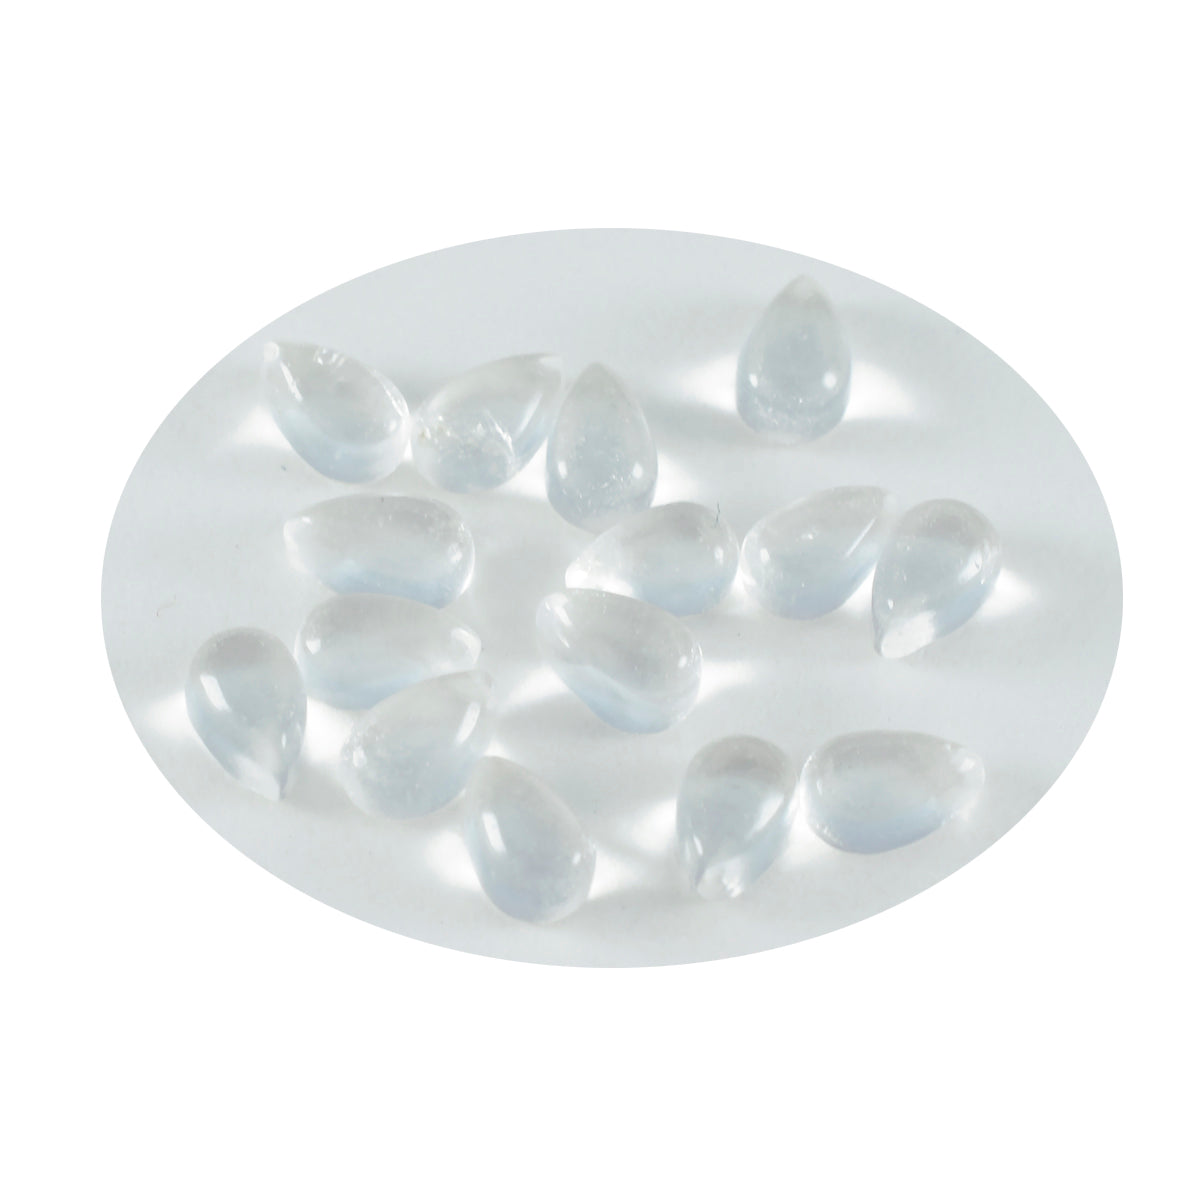 Riyogems 1pc cabochon de quartz en cristal blanc 5x7mm forme de poire superbe qualité pierre précieuse en vrac